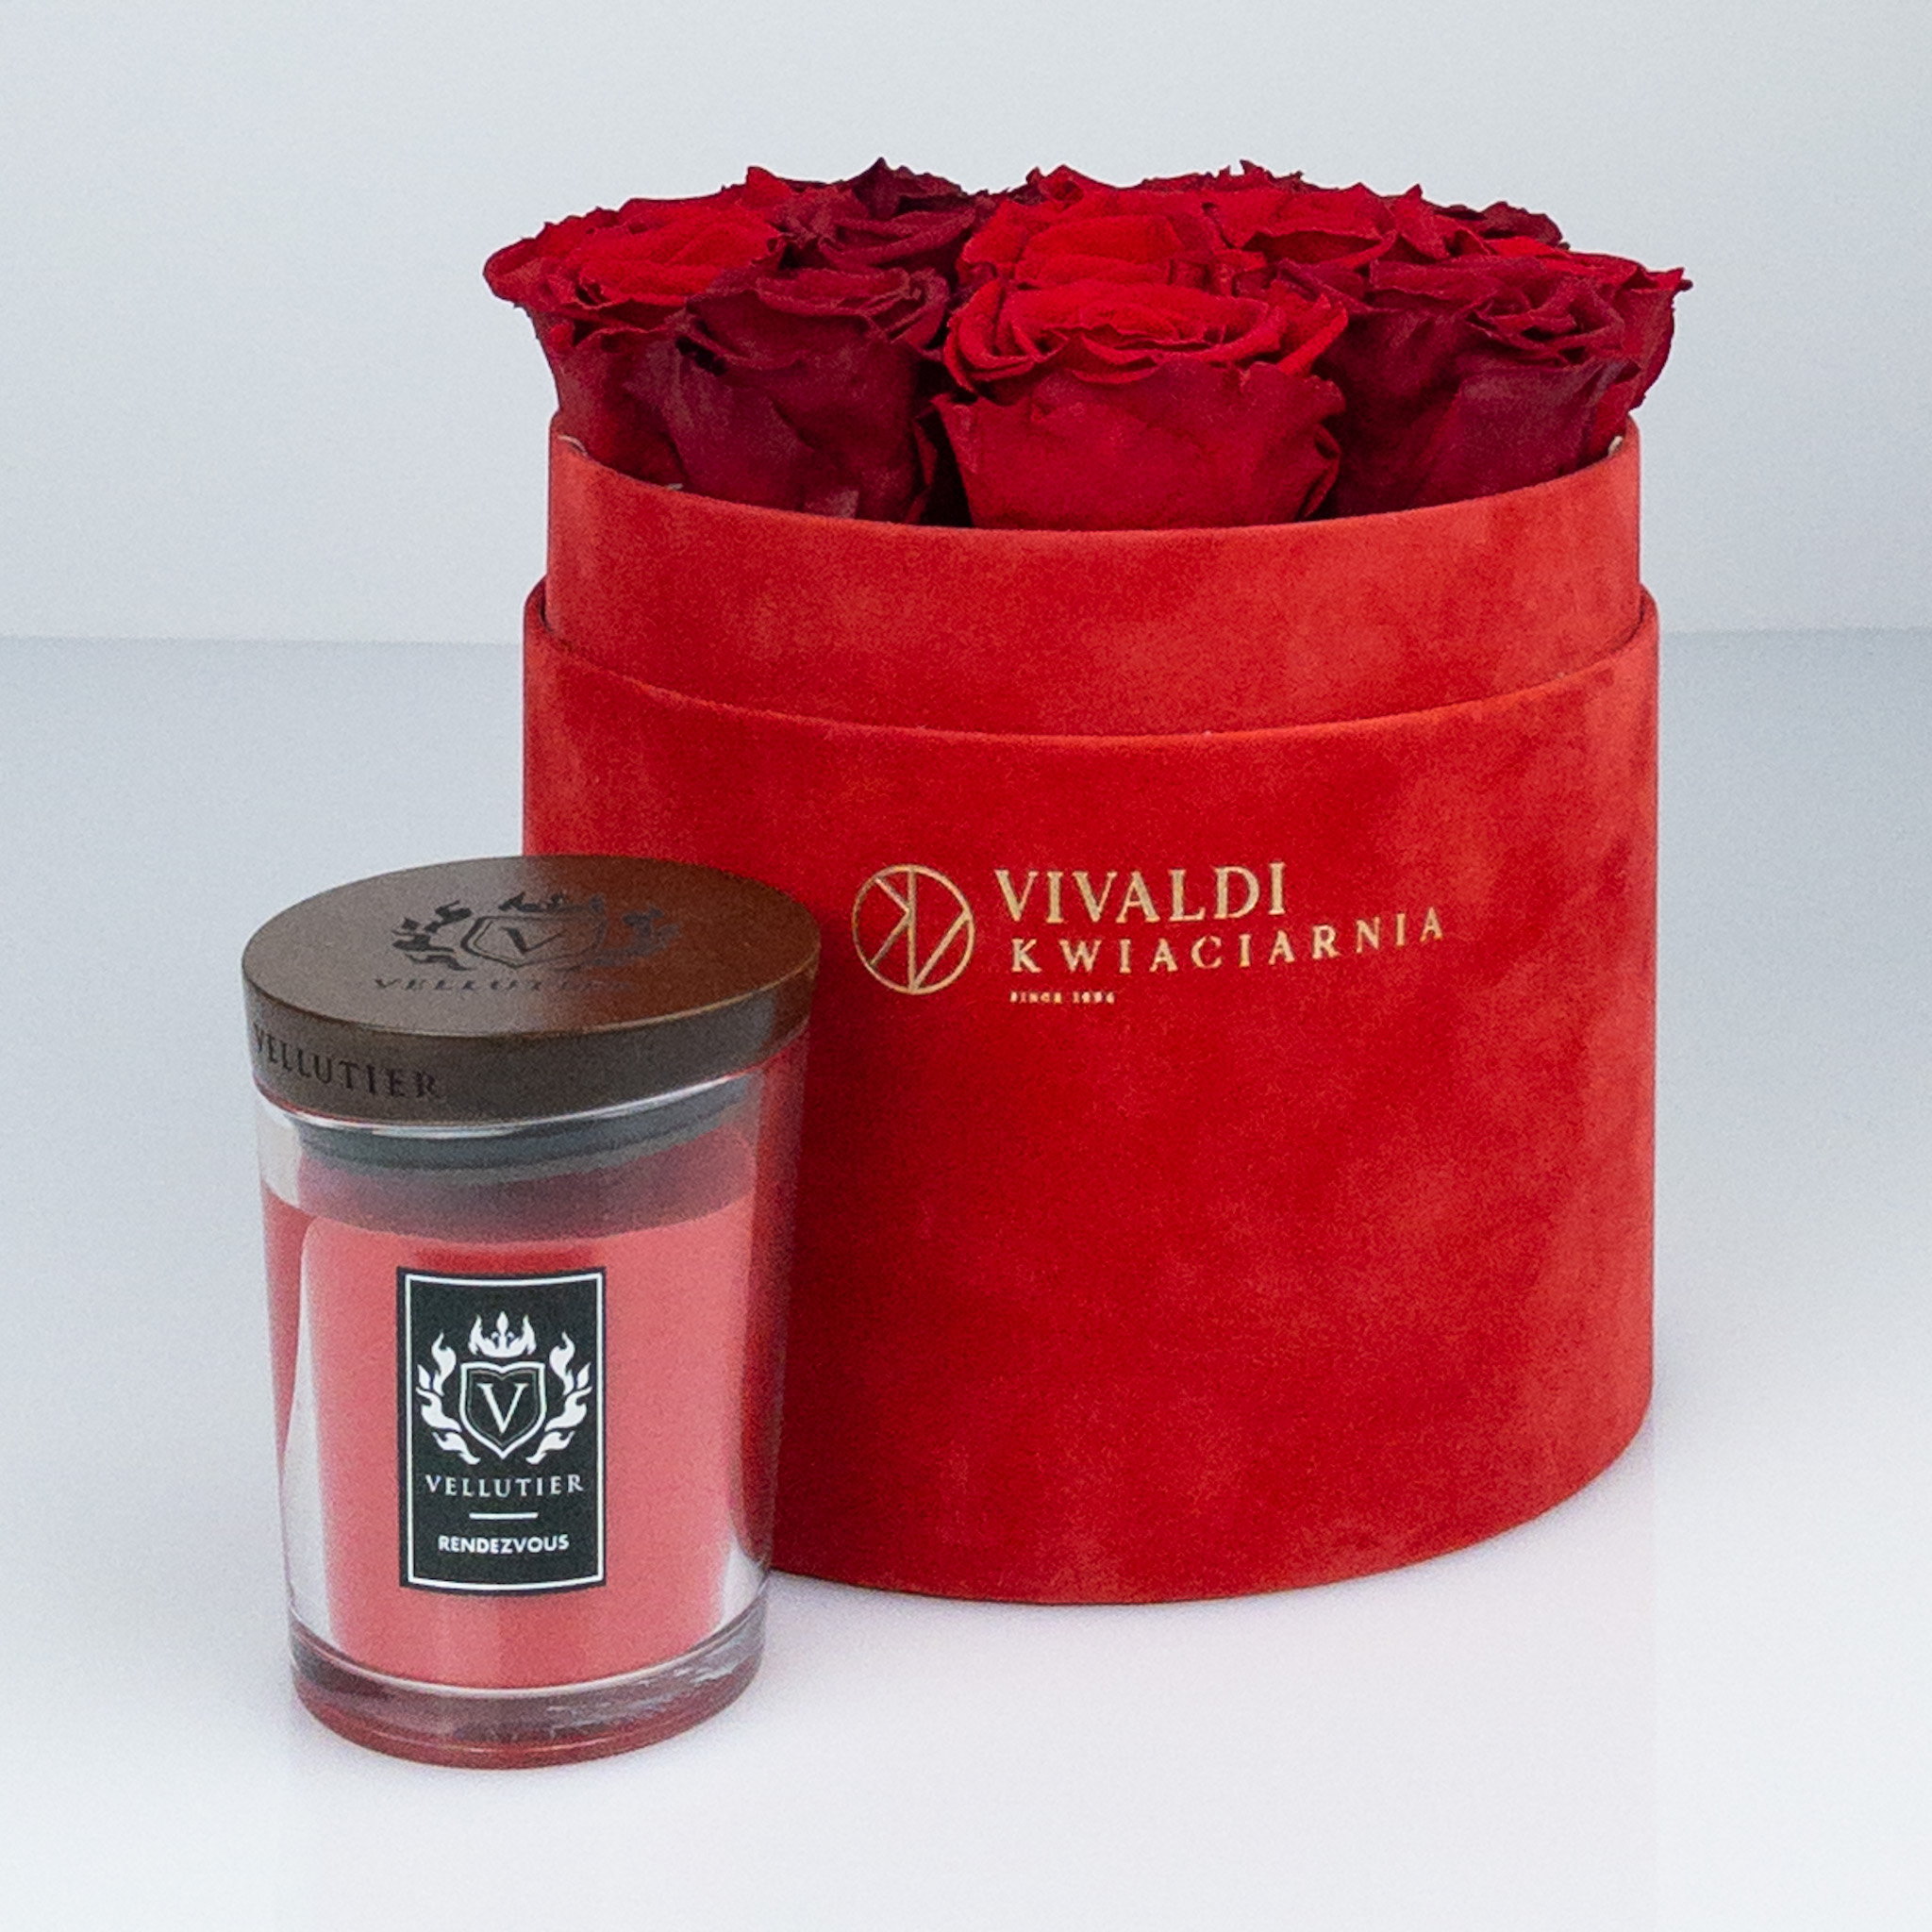 Czerwone wieczne róże pluś średnia zapachowa świeca firmy Vellutier.